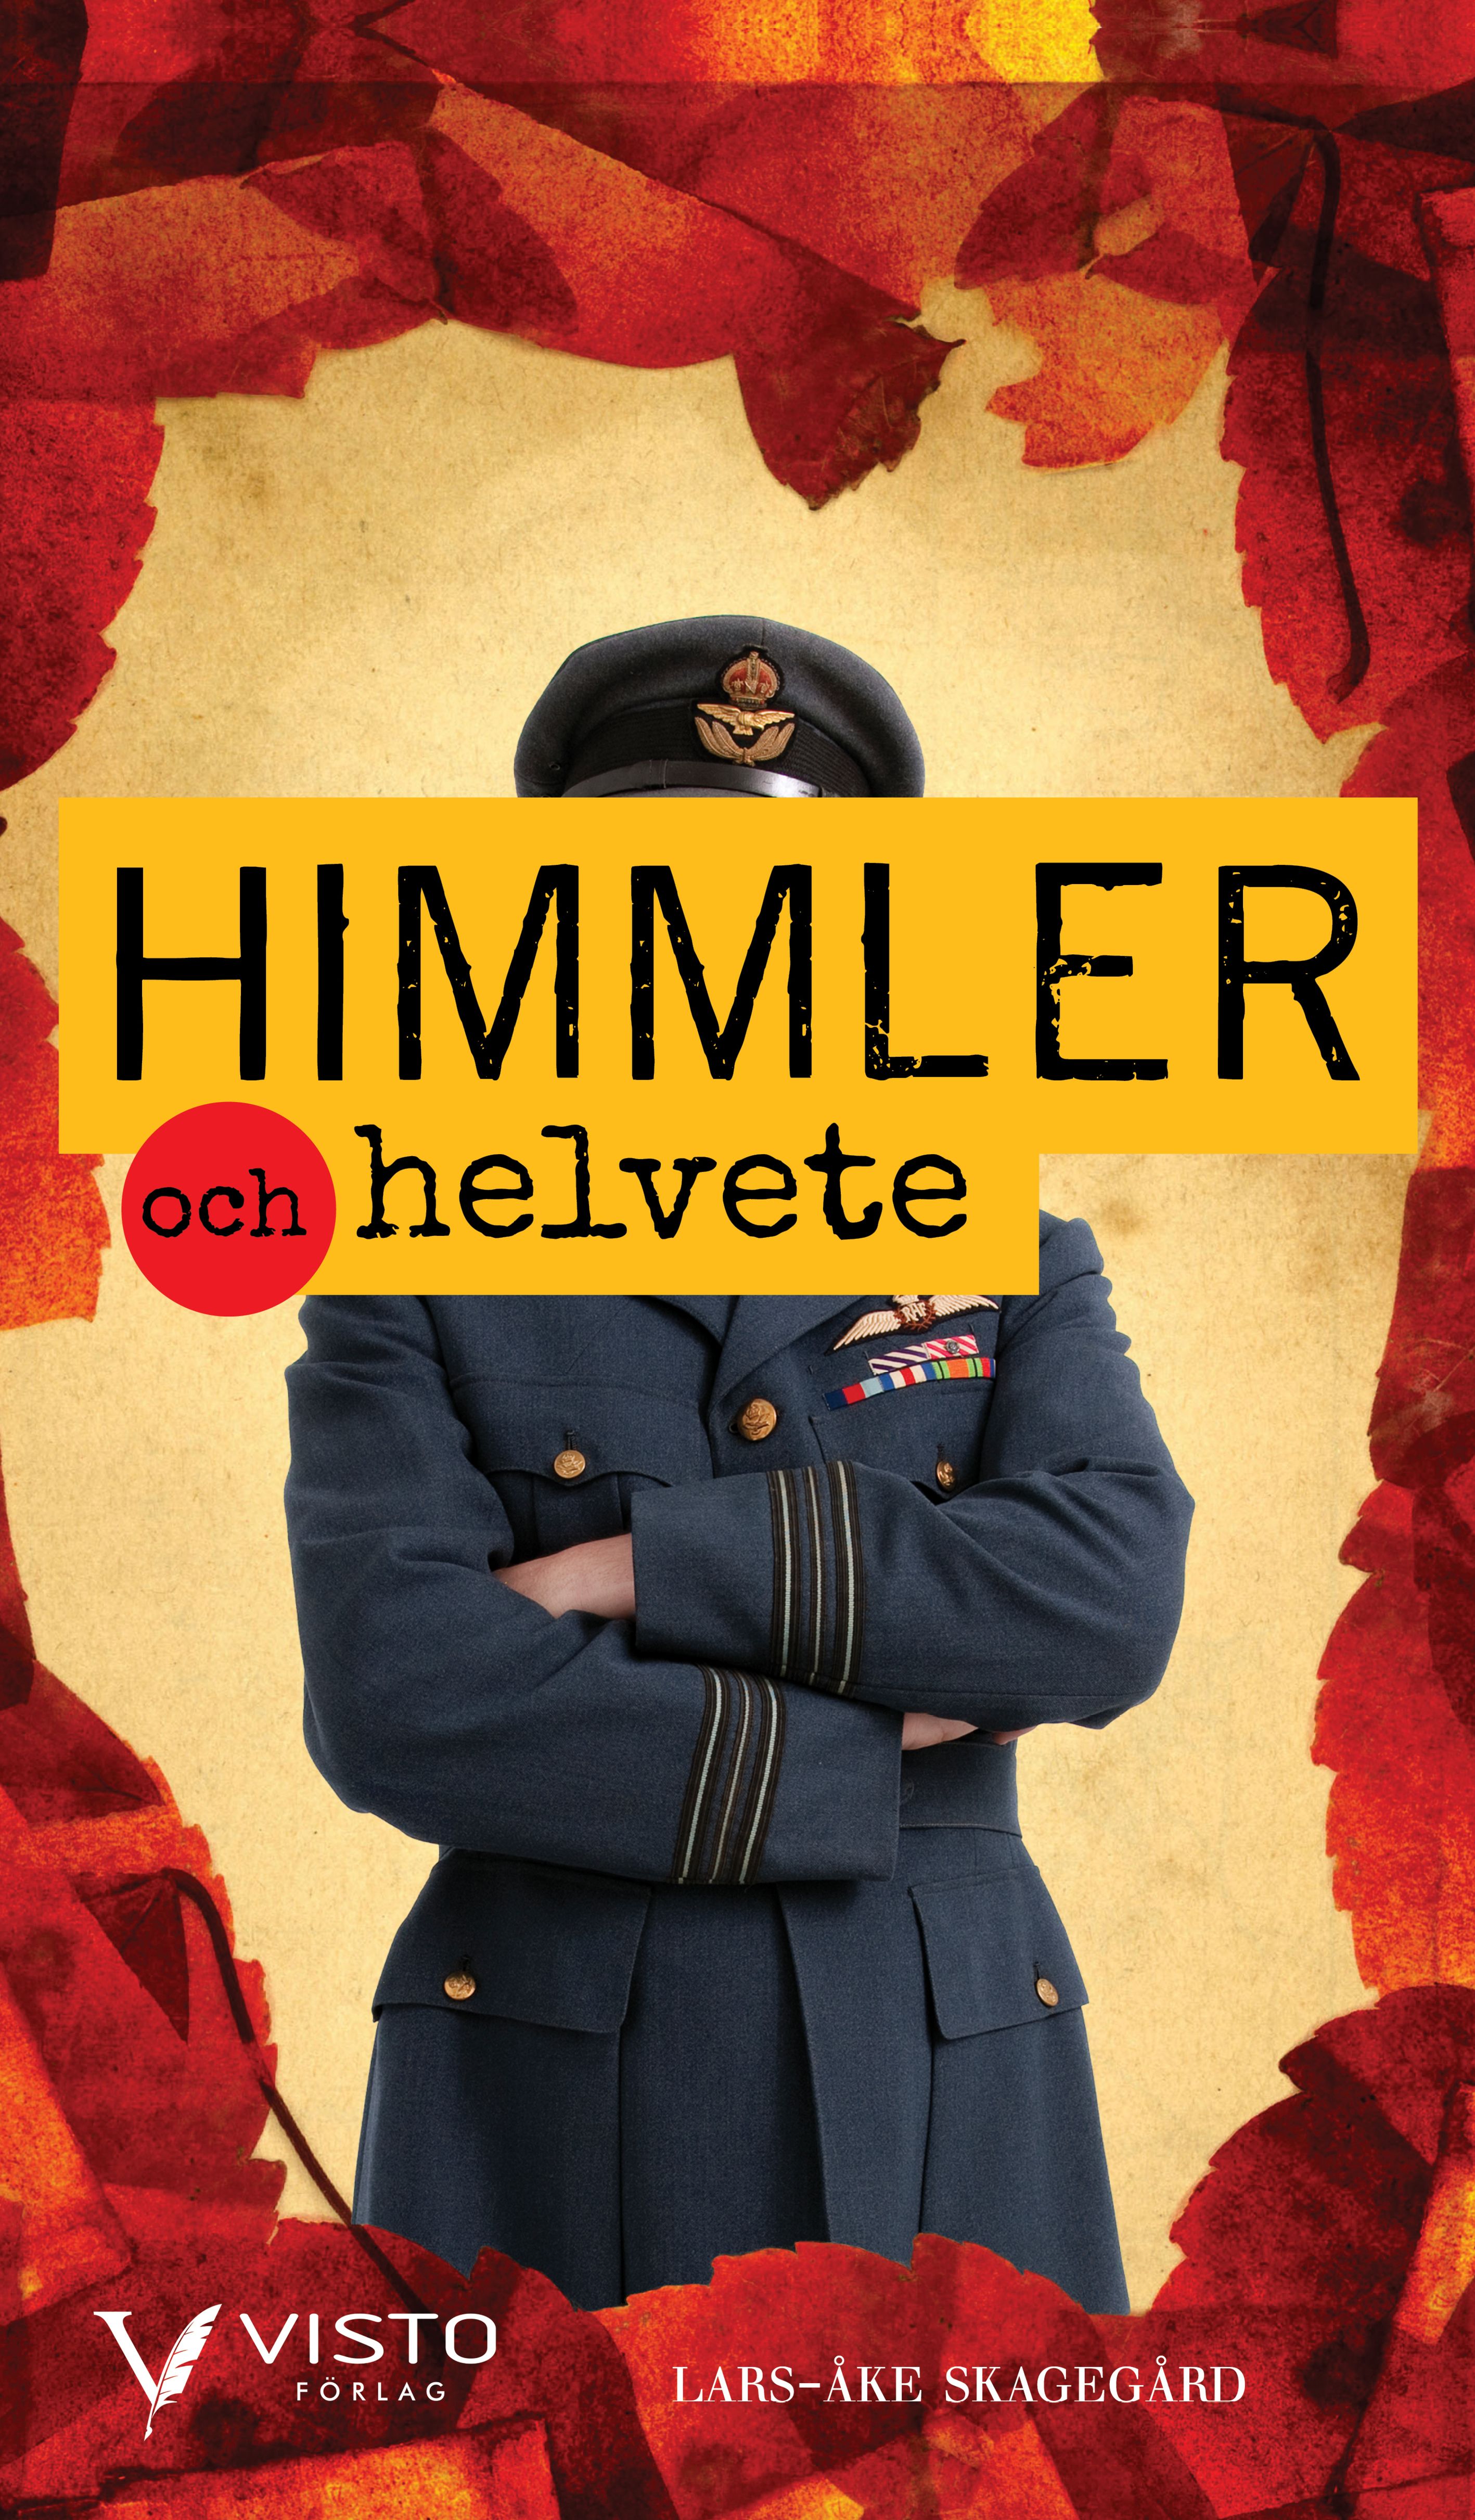 Himmler och helvete, eBook by Lars-Åke Skagegård